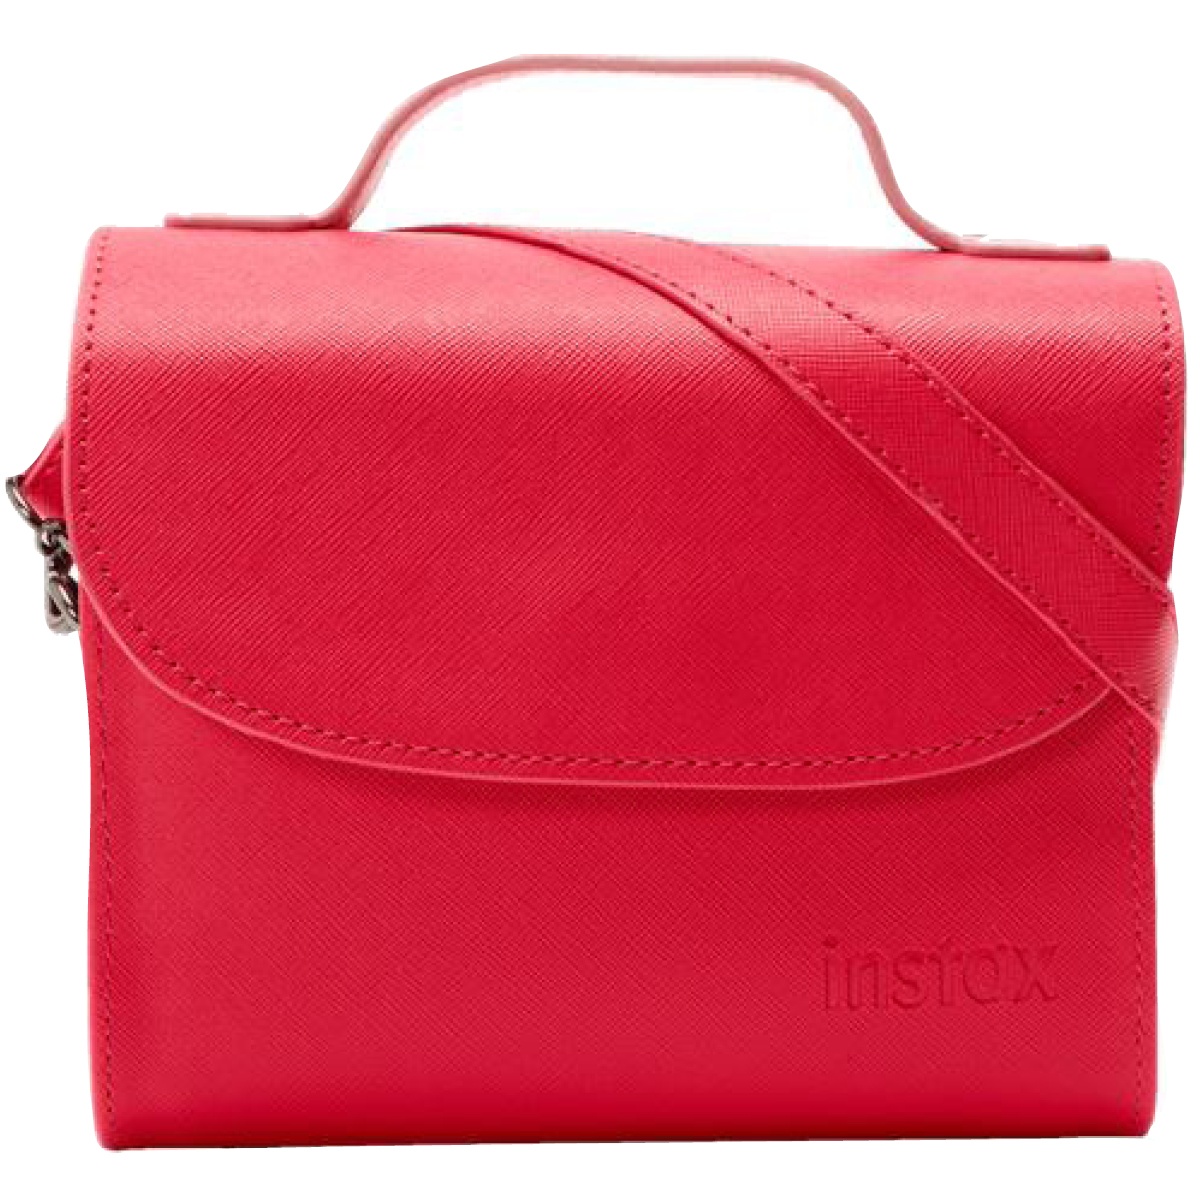 FUJIFILM Instax Mini 9 Bag pink